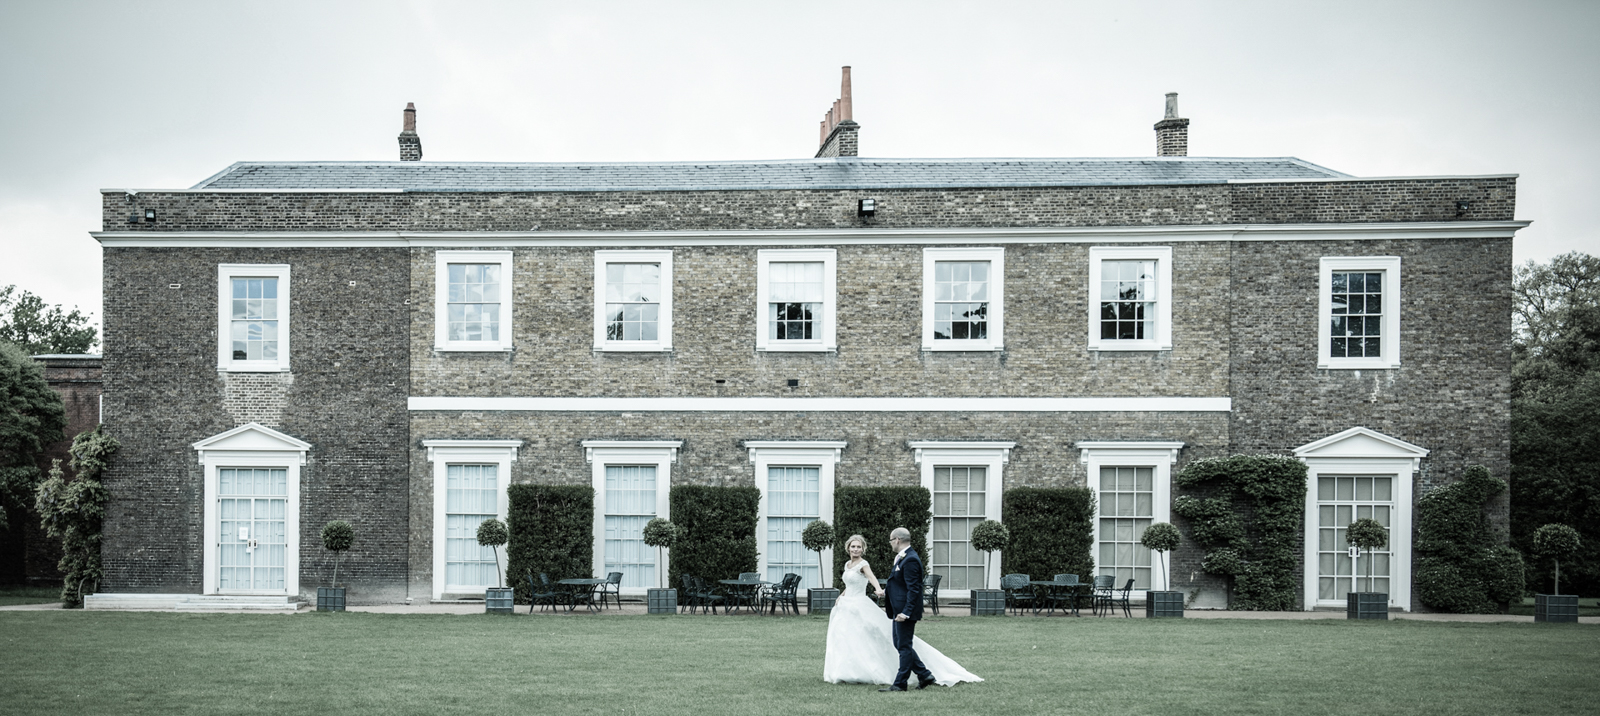 Fulham-Palace-Wedding-Photographer